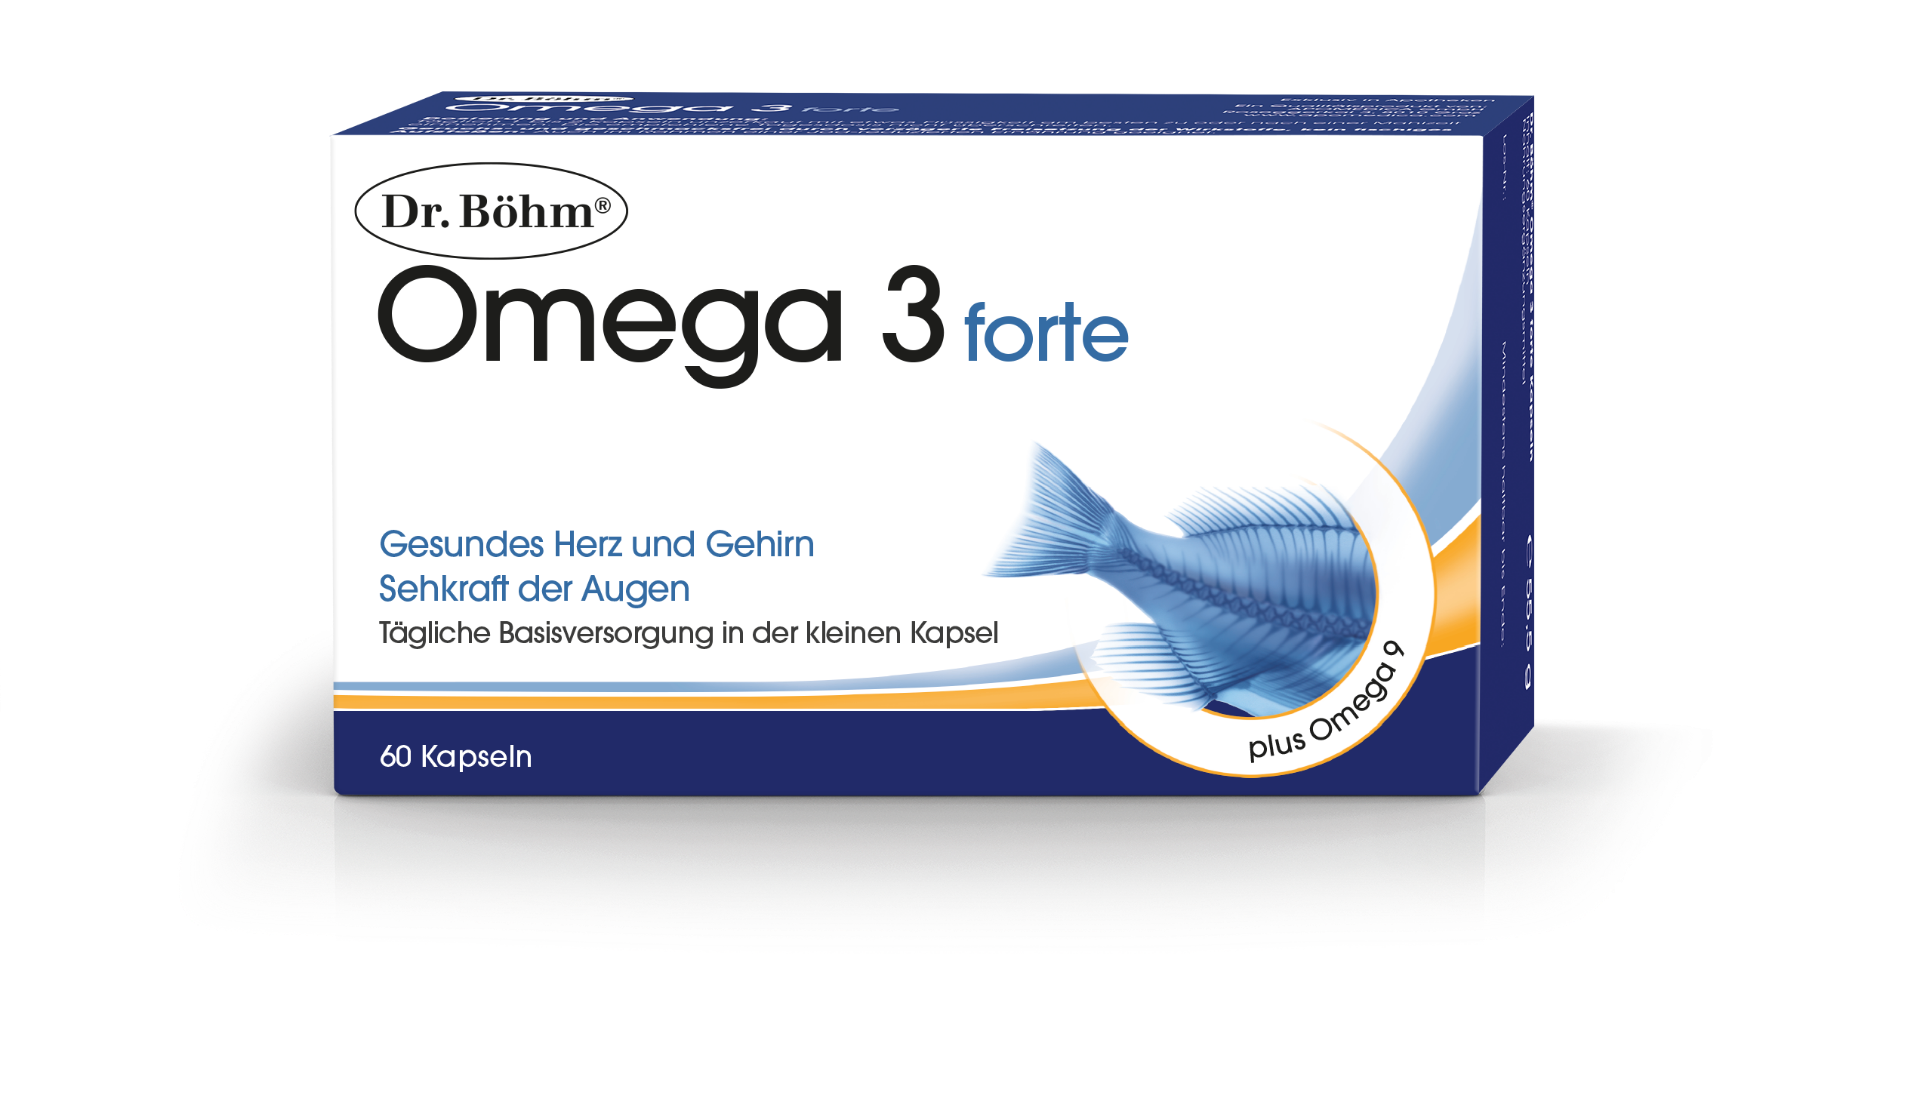 Dr. Böhm Omega 3 forte